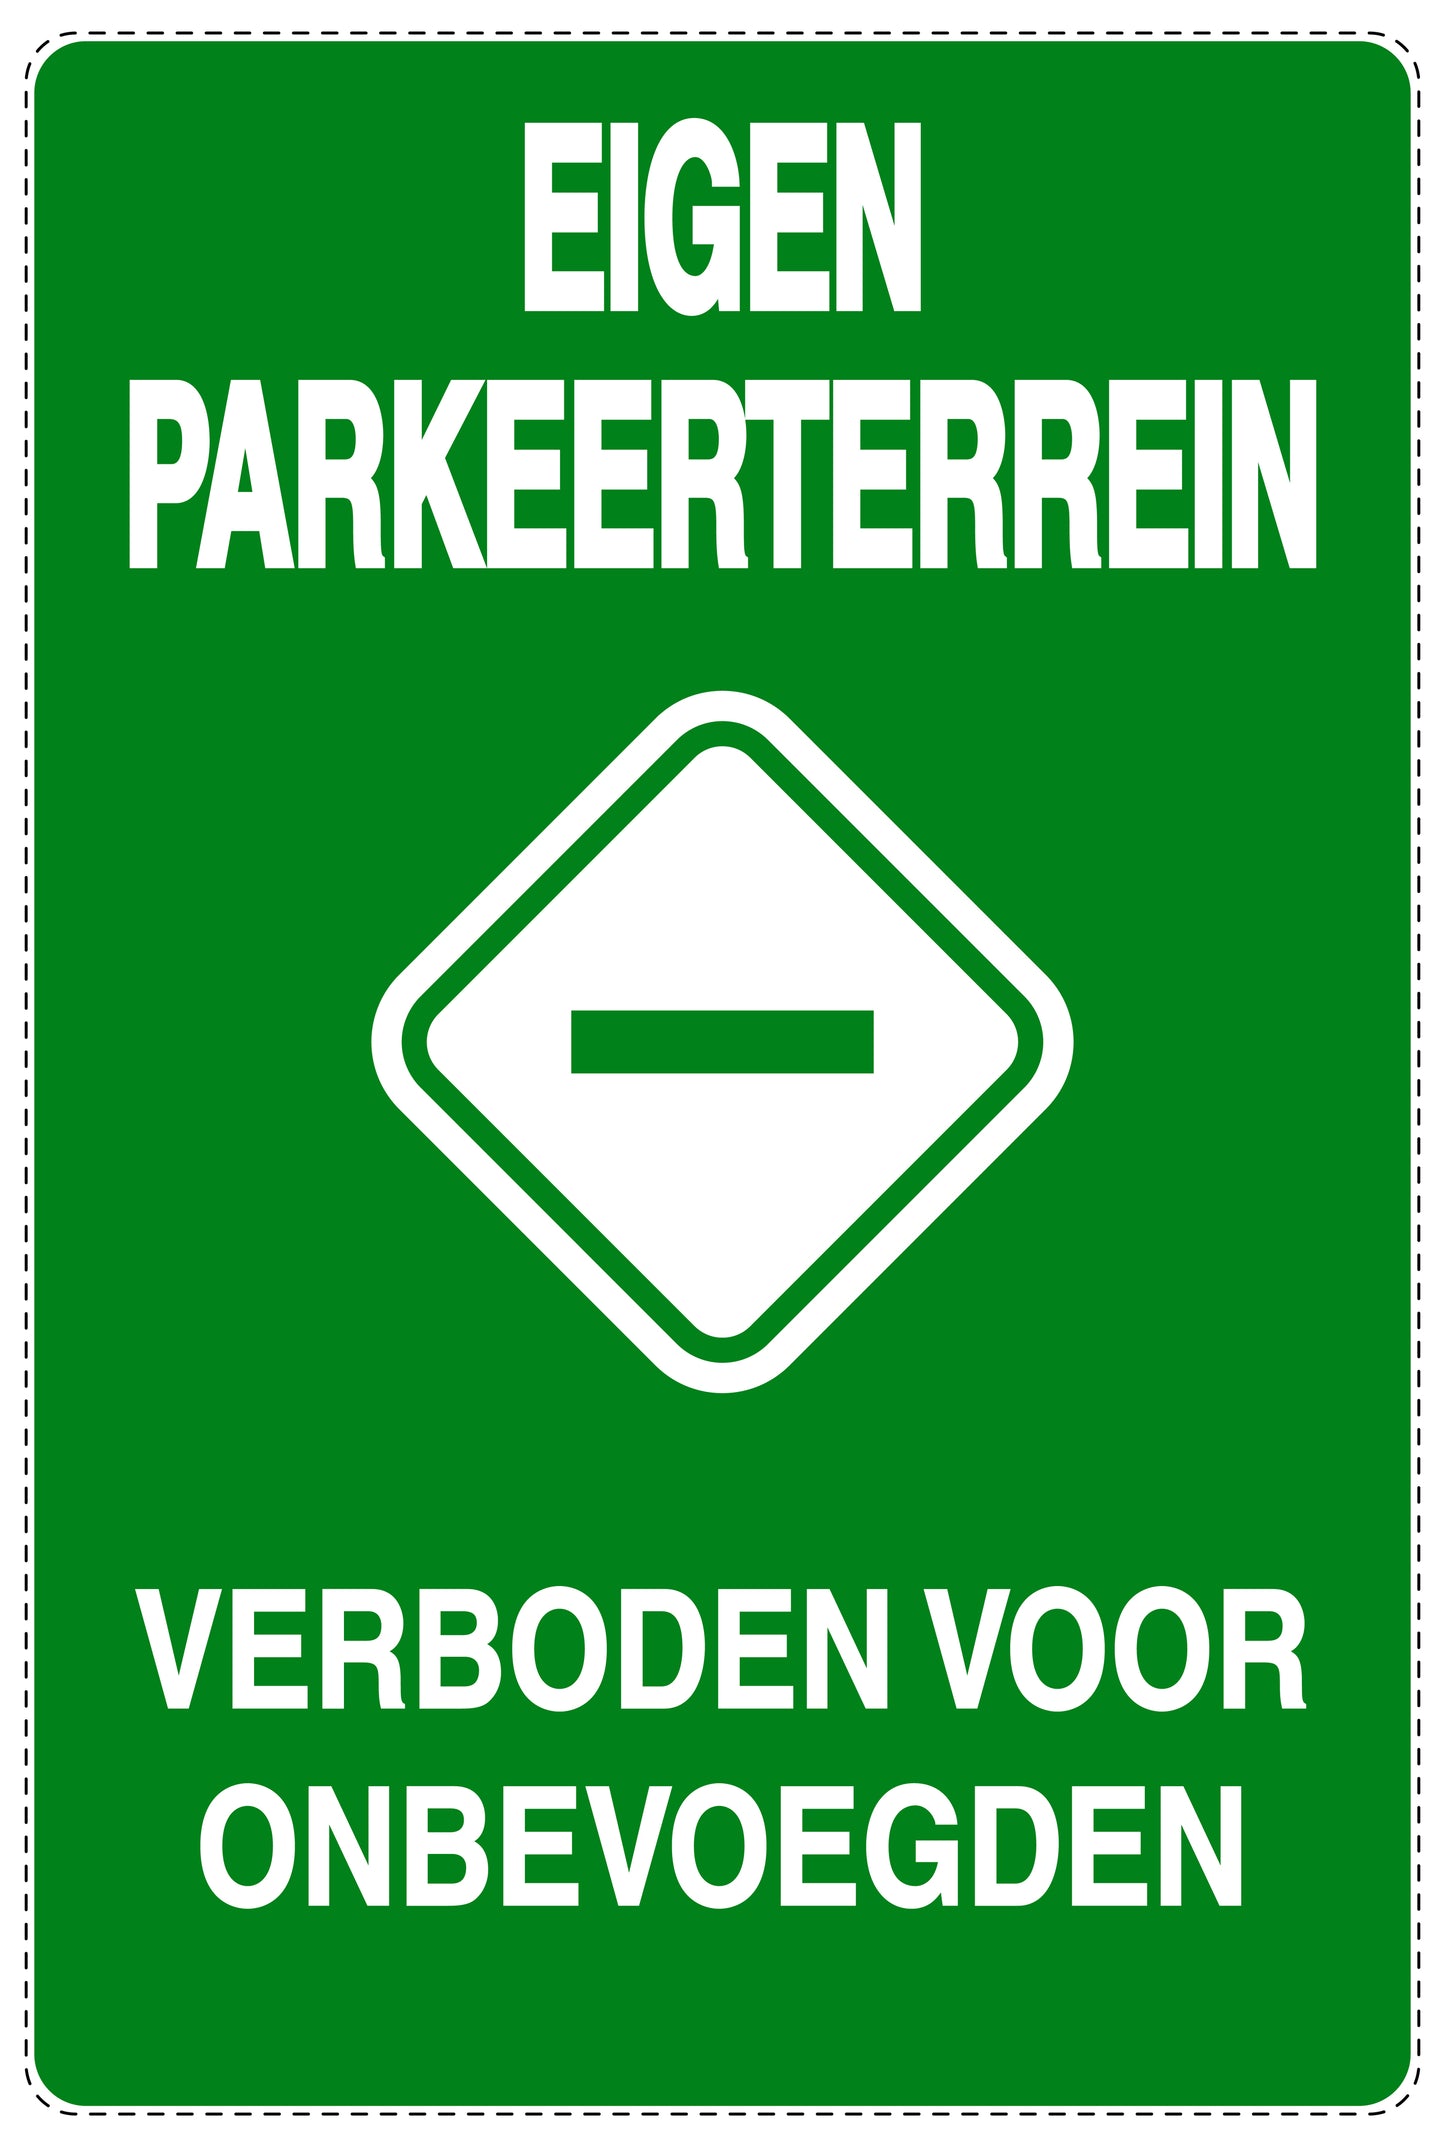 Niet parkeren Sticker "Eigen parkeerterrein verboden voor onbevoegden" EW-NPRK-2180-54